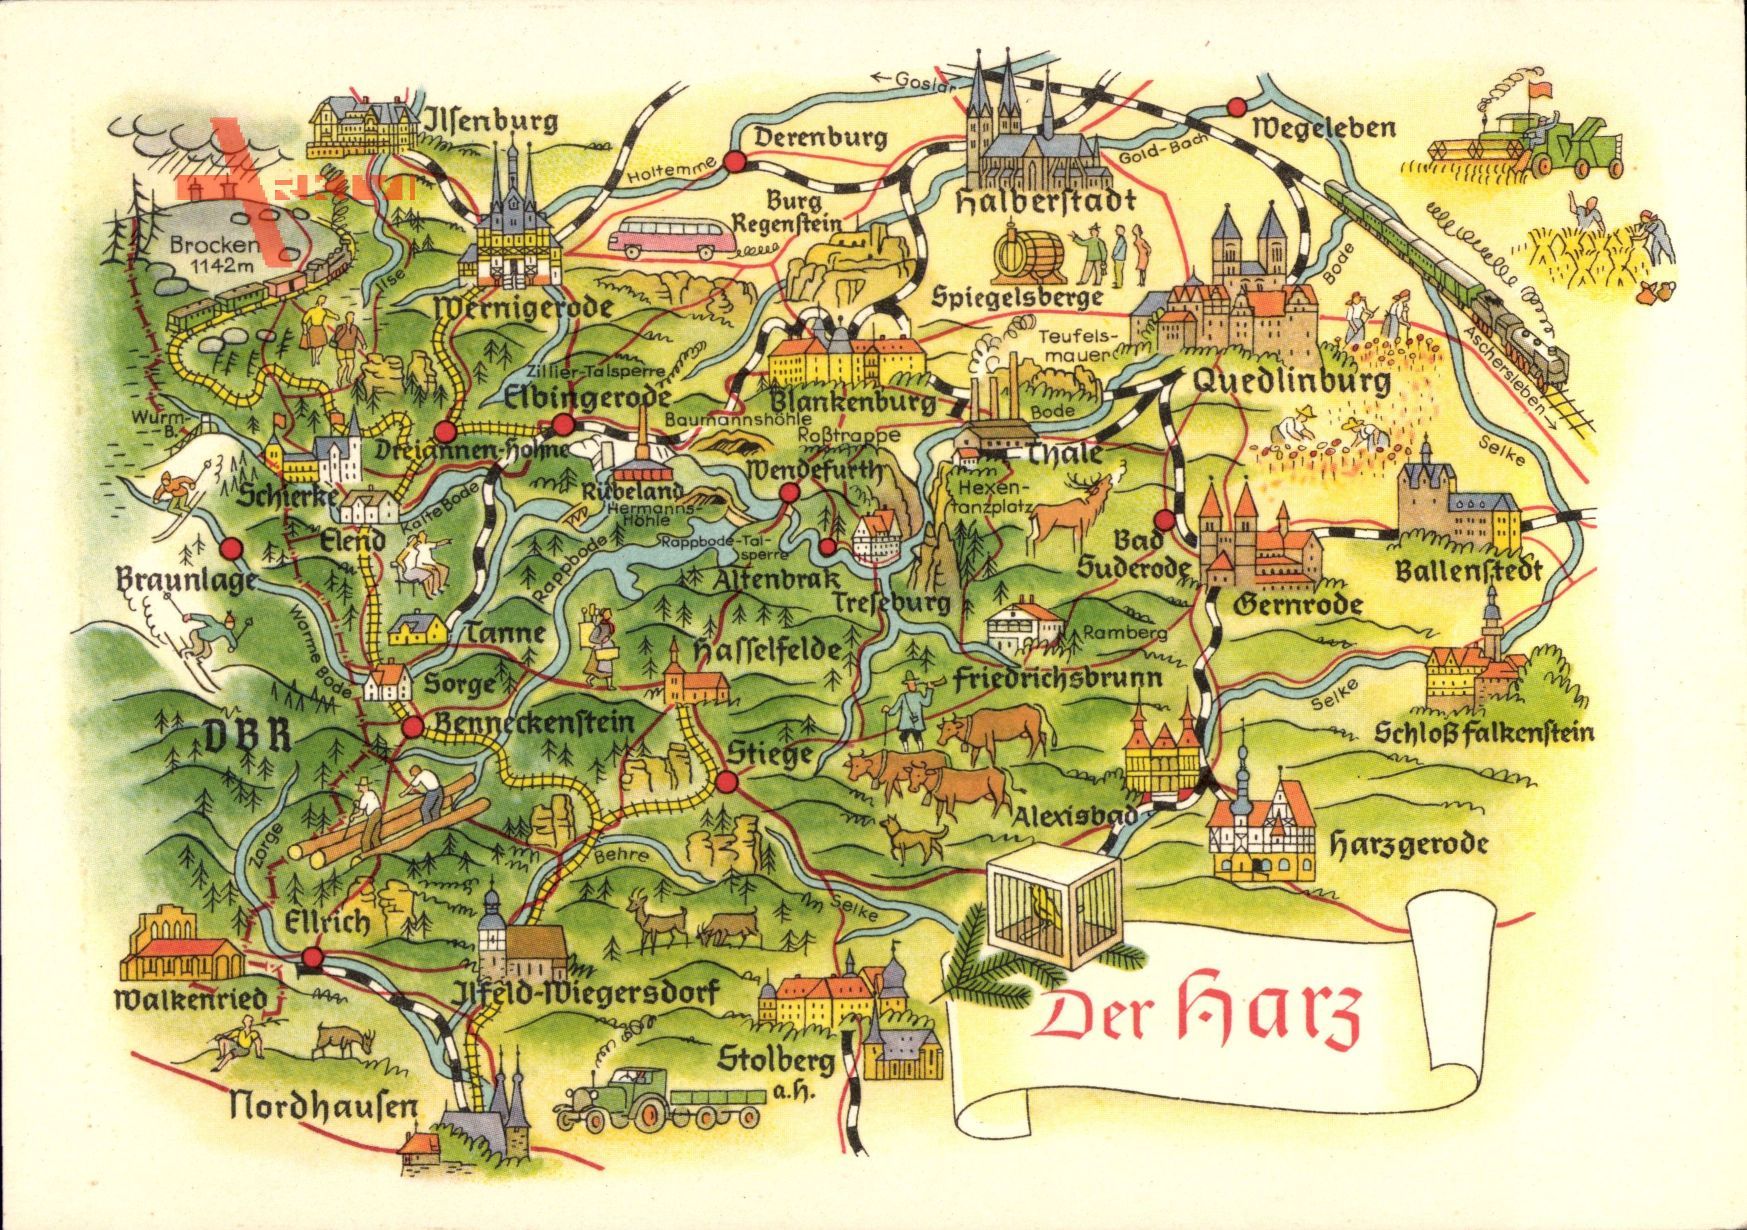 Landkarten Quedlinburg im Harz, Halberstadt, Nordhausen, Braunlage, Ilsenburg